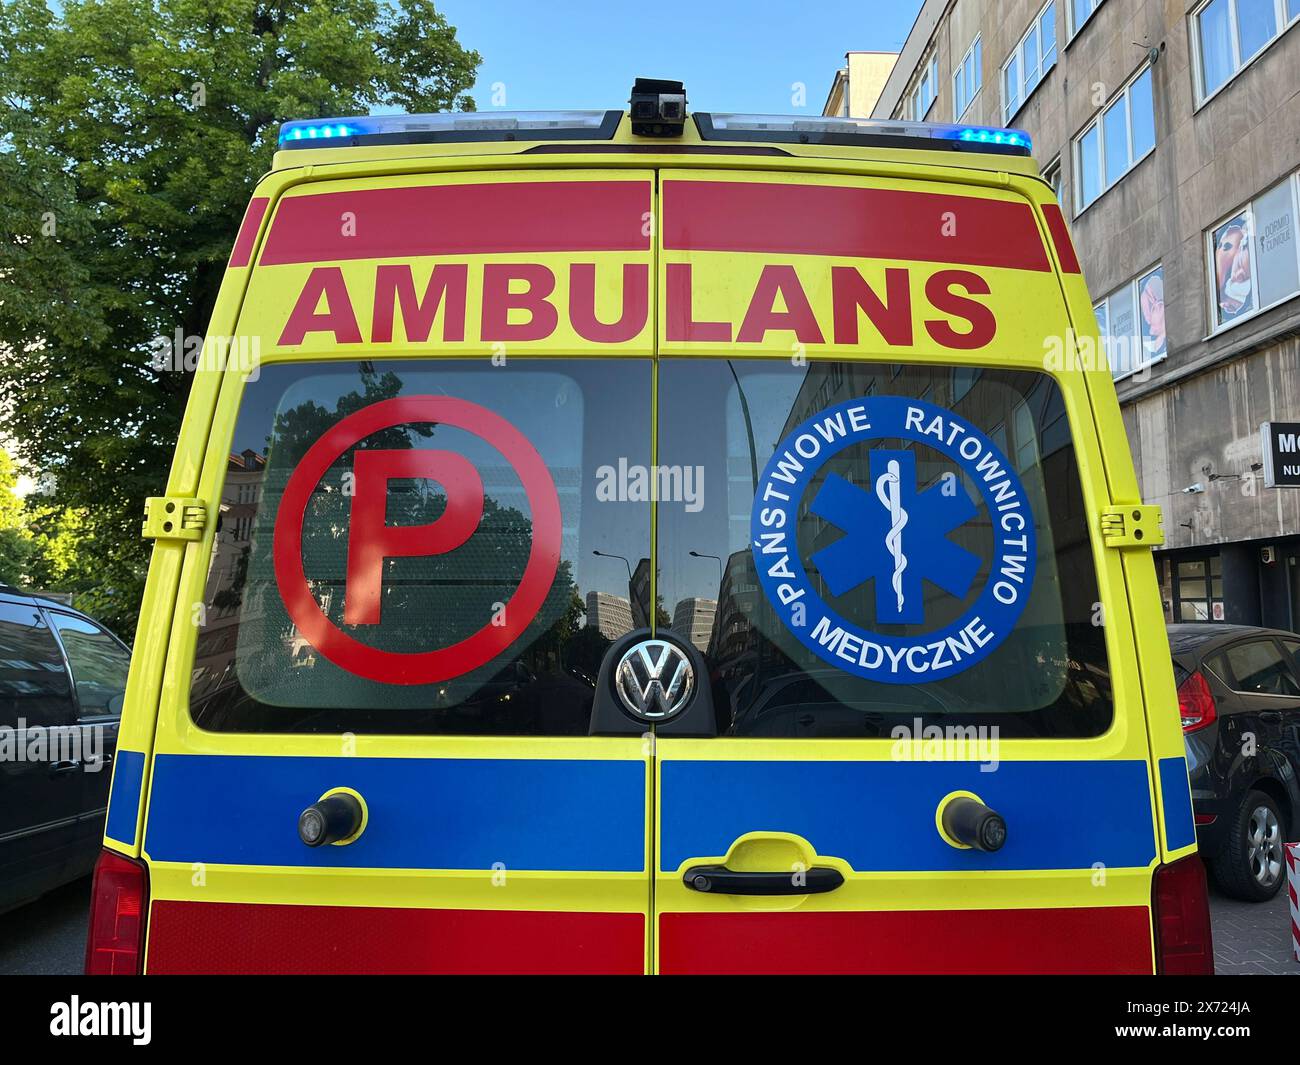 Warschau, Polonia. 17 maggio 2024. Un'ambulanza polacca con la scritta "Ambulans" (ambulanza) è parcheggiata su una strada. Crediti: Doris Heimann/dpa/Alamy Live News Foto Stock